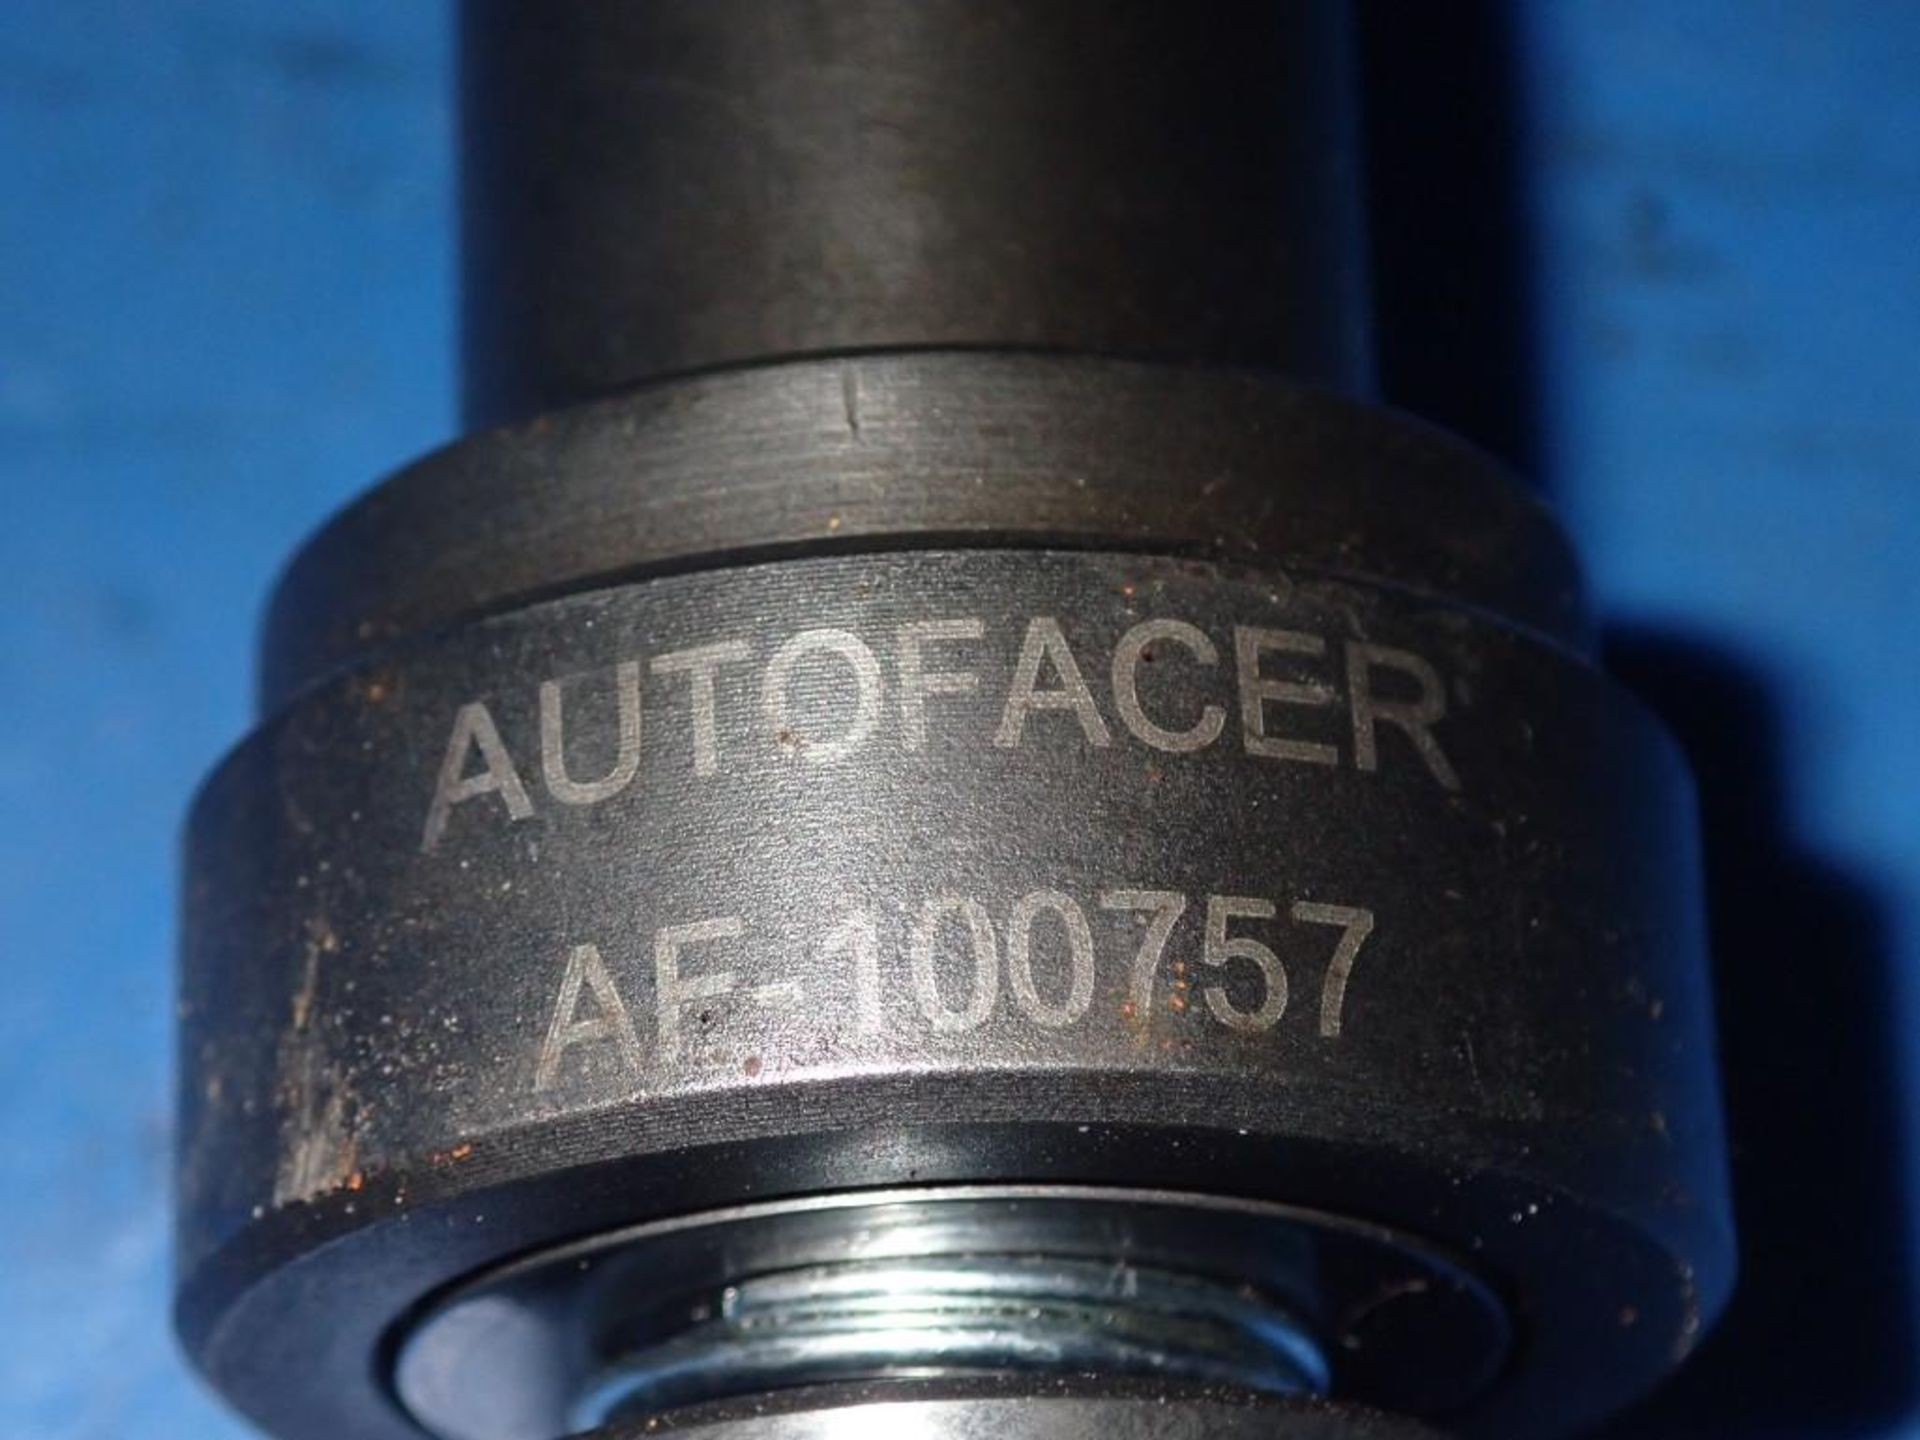 Lot of (2) AutoFacer #AF-100757 - Image 2 of 3